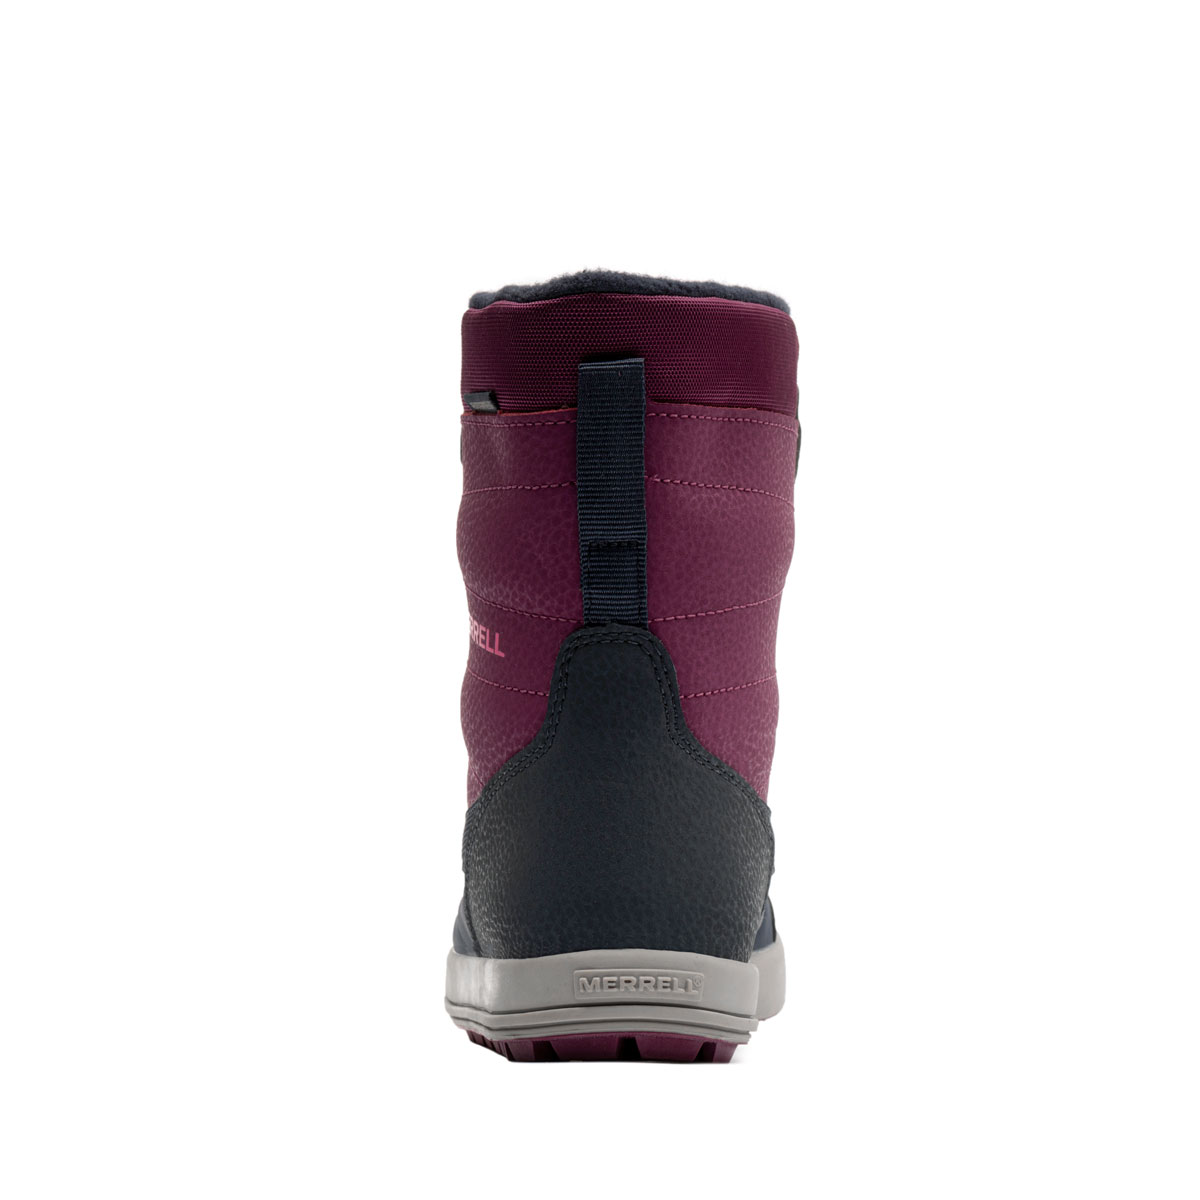 Merrell Snow Storm WaterProof Детски зимни обувки MK165206